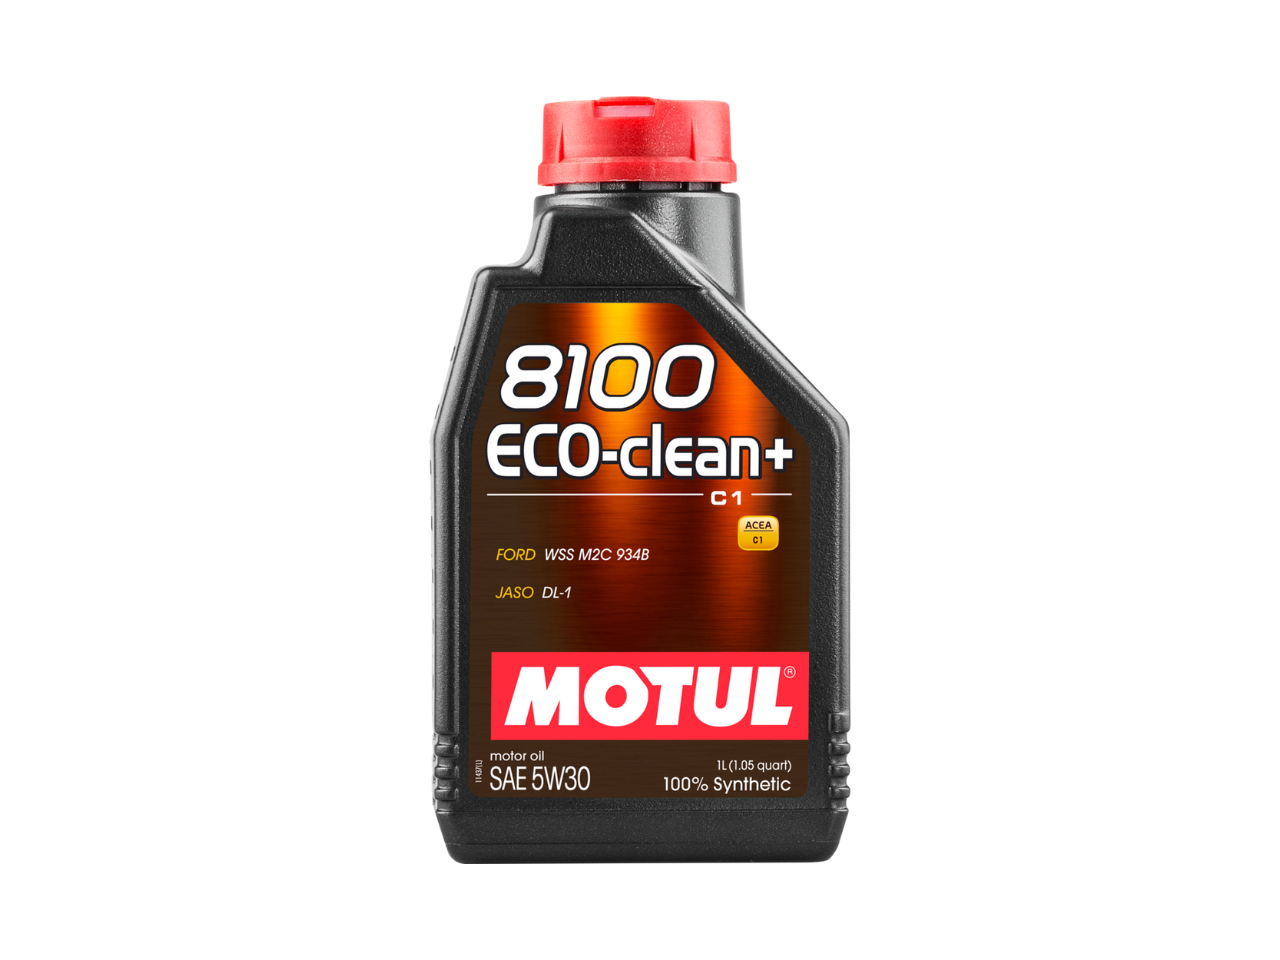 Купить недорого Моторное масло Motul 8100 Eco-clean в Москве